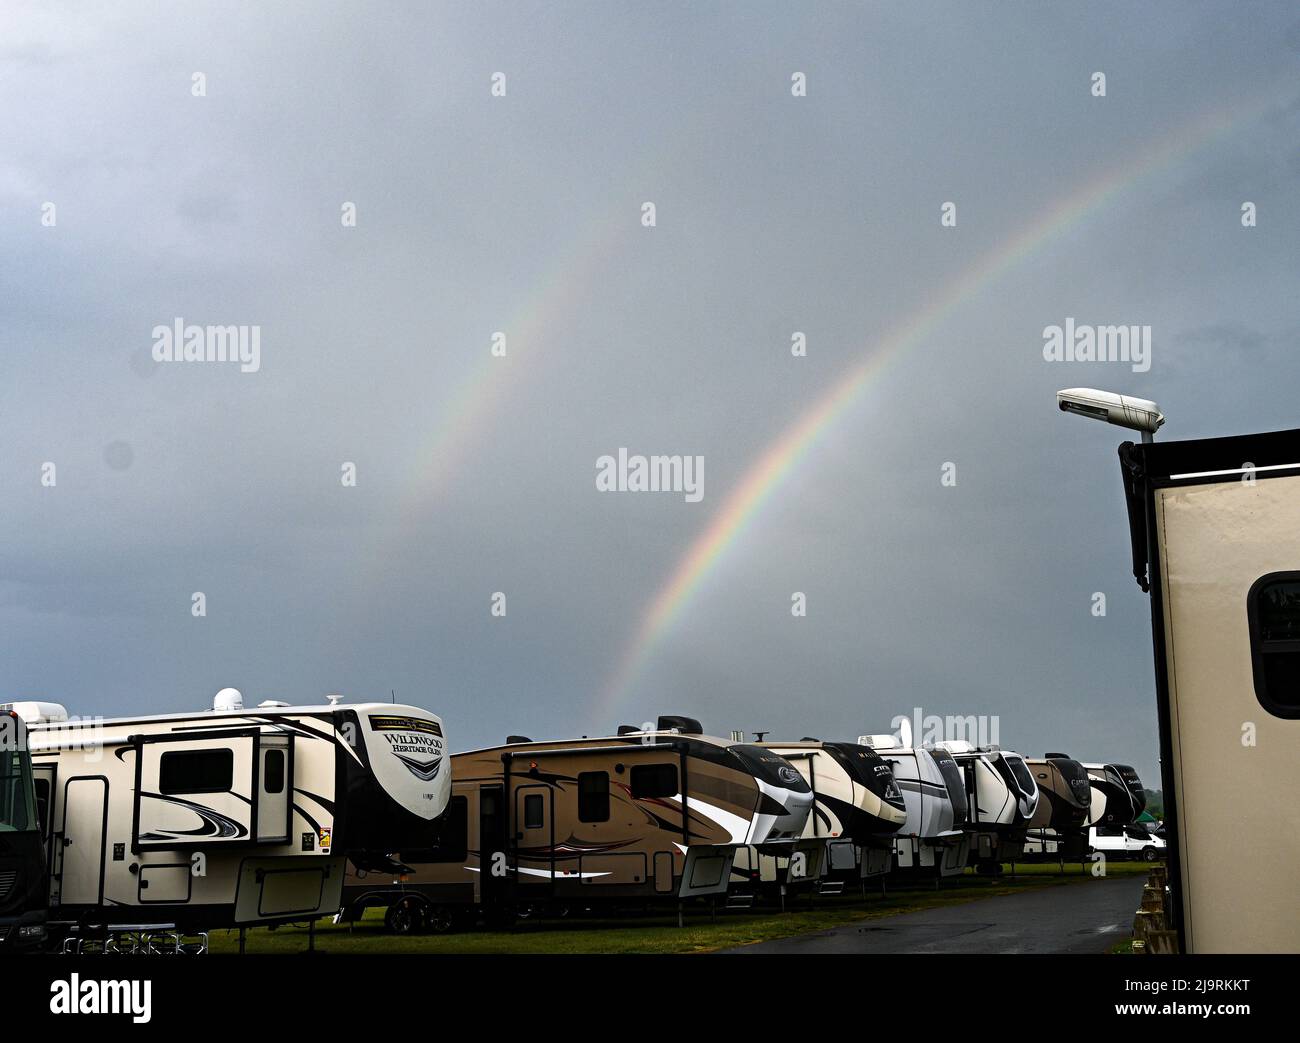 Ein doppelter Regenbogen, der auf einem dunklen launischen Himmel glitzert und über einer Reihe amerikanischer Wohnmobil-Anhänger, dem Windebago's, aufsteigt Stockfoto